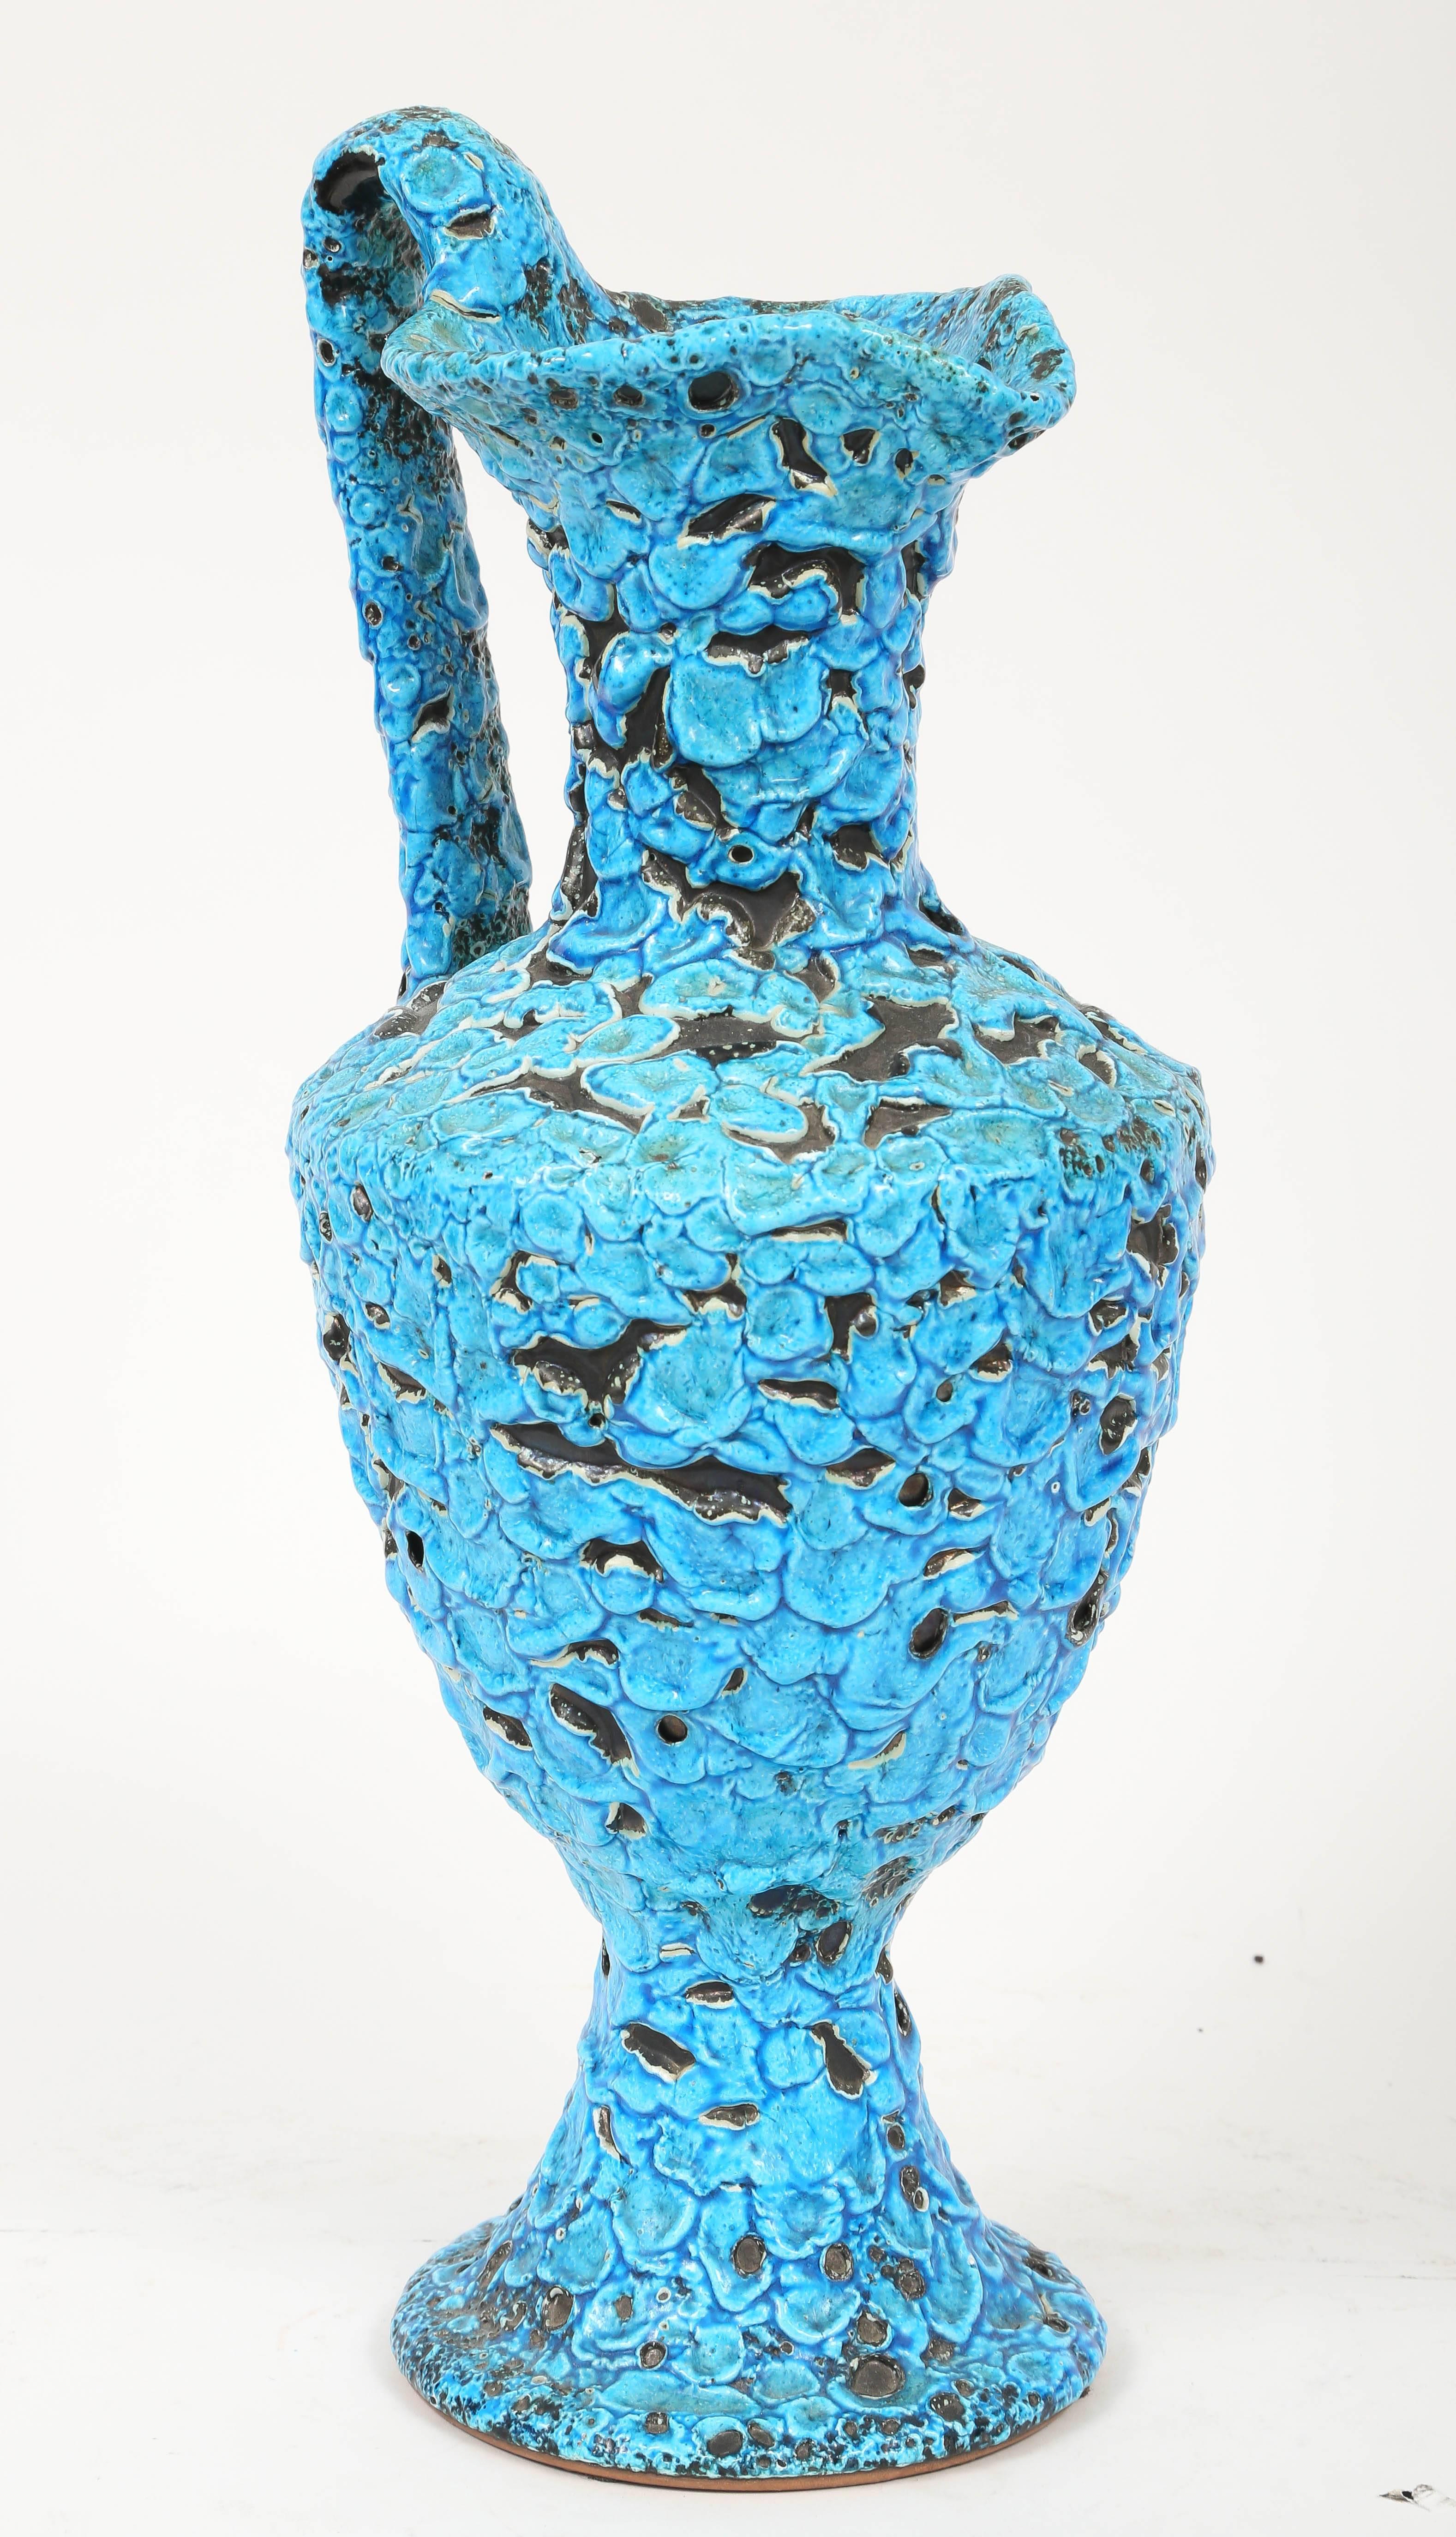 La glaçure distinctive de ce grand vase pichet a été mise au point par Charles Cart, fondateur de la marque Le Cyclope Pottery à Annecy-le-Vieux, en Haute-Savoie (France). Le processus de cuisson révèle la couche noire sous l'émail turquoise d'une